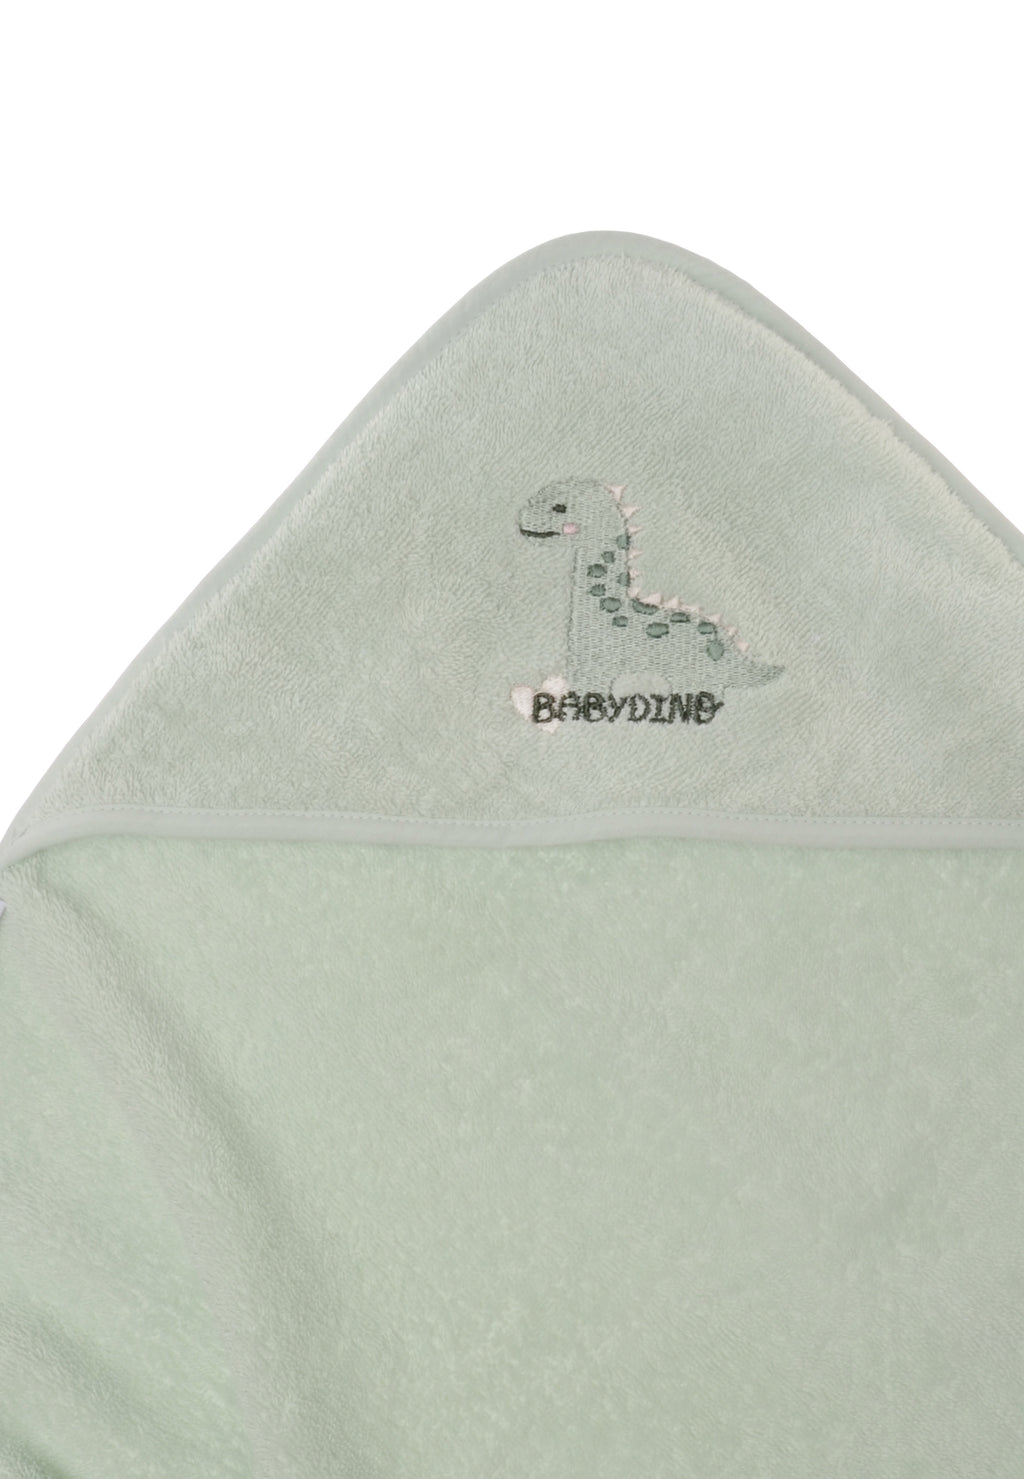 Kapuzenbadetuch aus Frottee in der Farbe schilf mit niedlicher Dino Stickerei